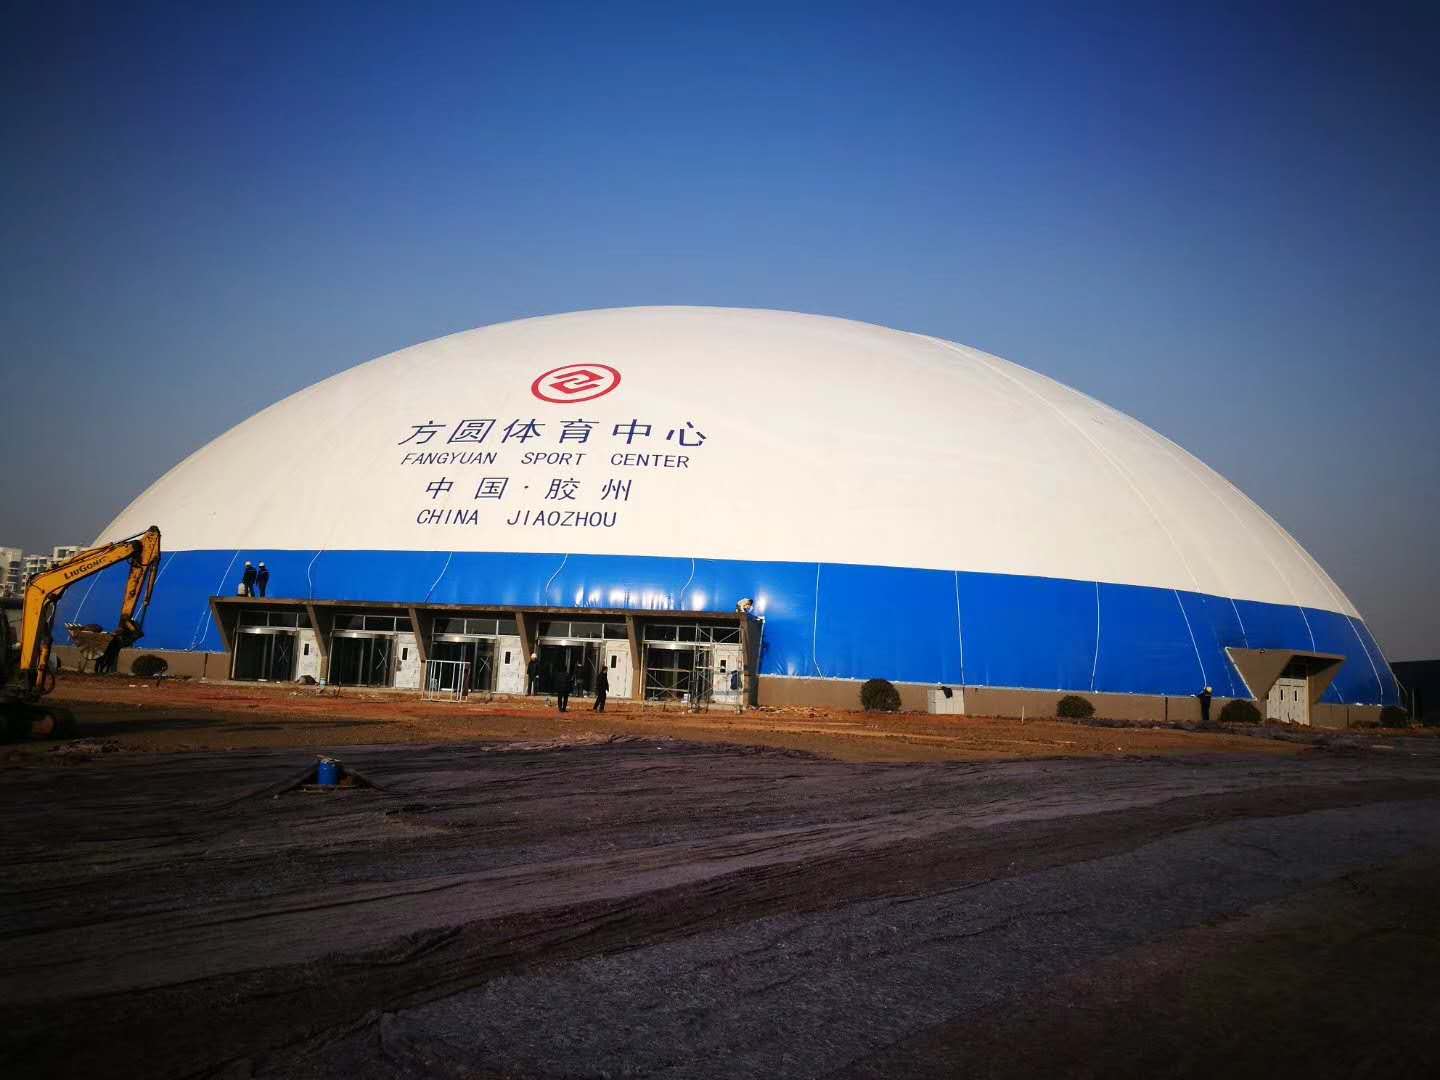 膠州市方圓體育中心